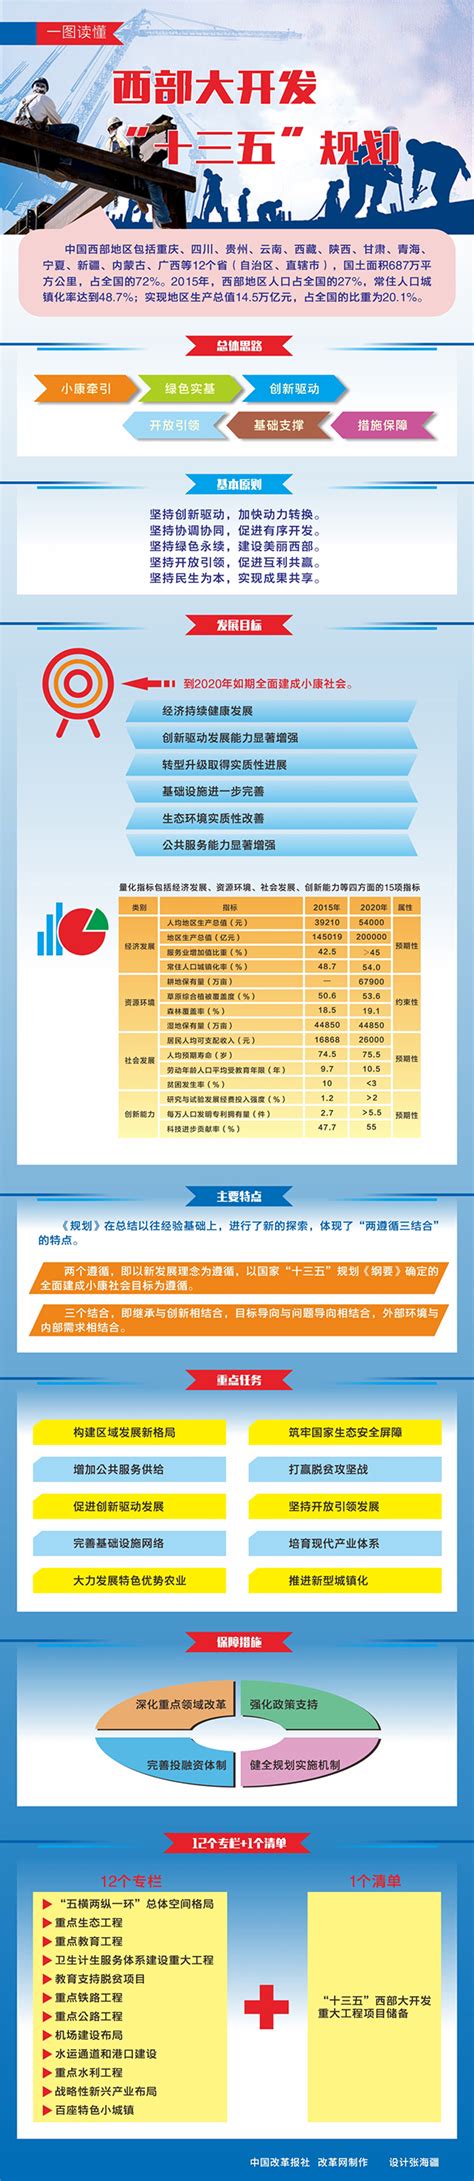 湖南省公共就业服务信息管理平台网http://222.240.173.92:7001/hnpes/ - 学参网